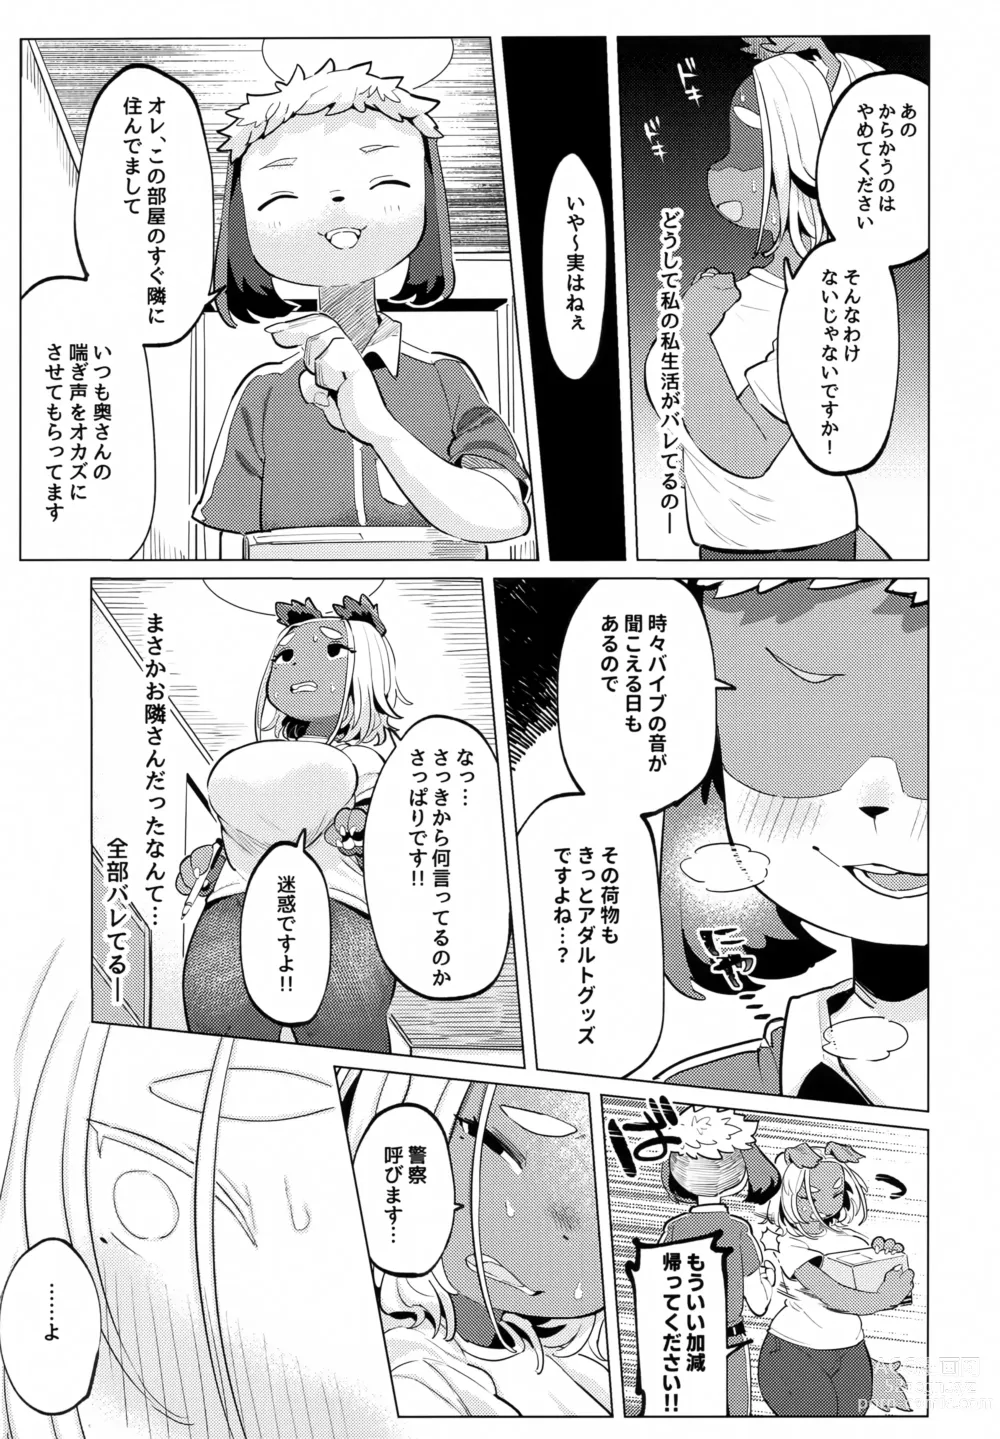 Page 12 of doujinshi Bonnou - Desire